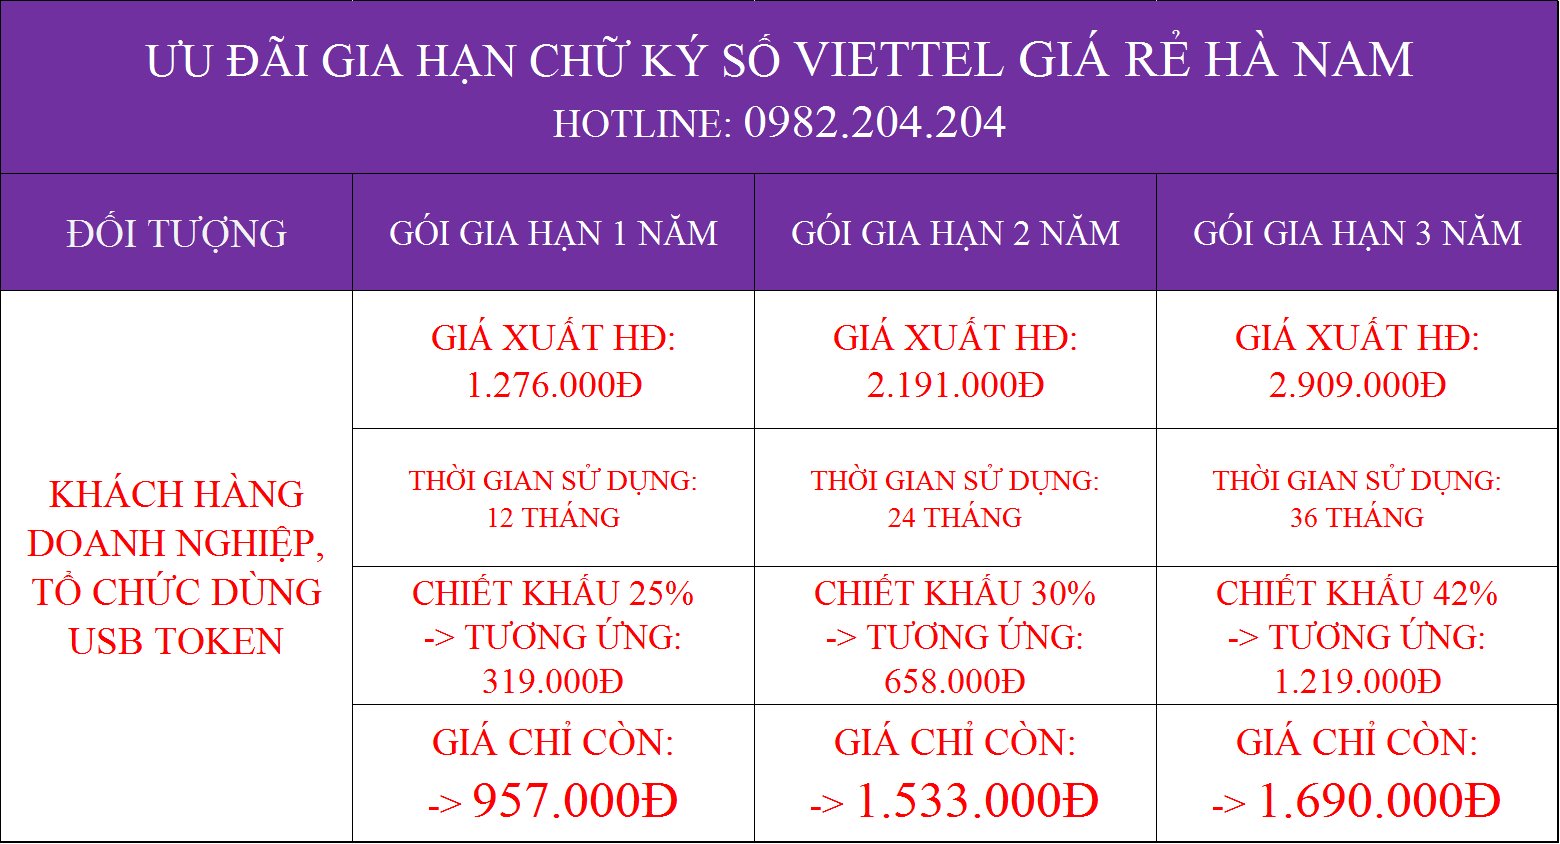 Gia hạn chữ ký số Viettel giá rẻ tại Hà Nam